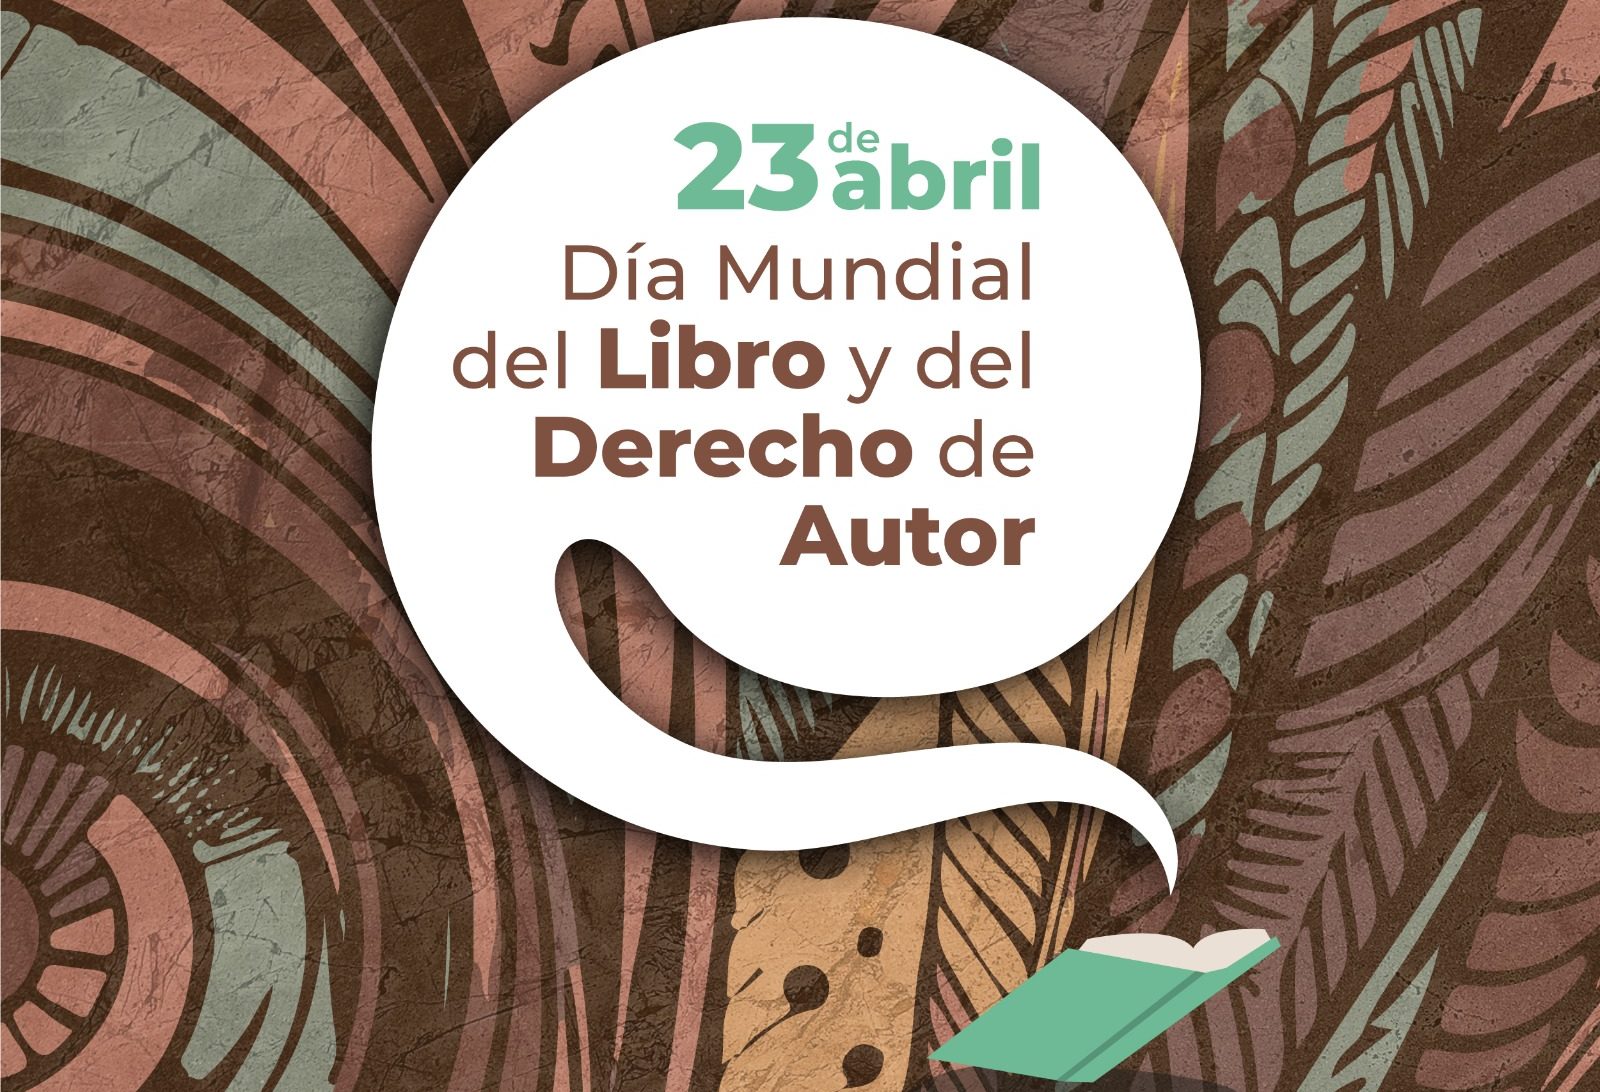 En Coatepec celebran Día Mundial del Libro y del Derecho de Autor